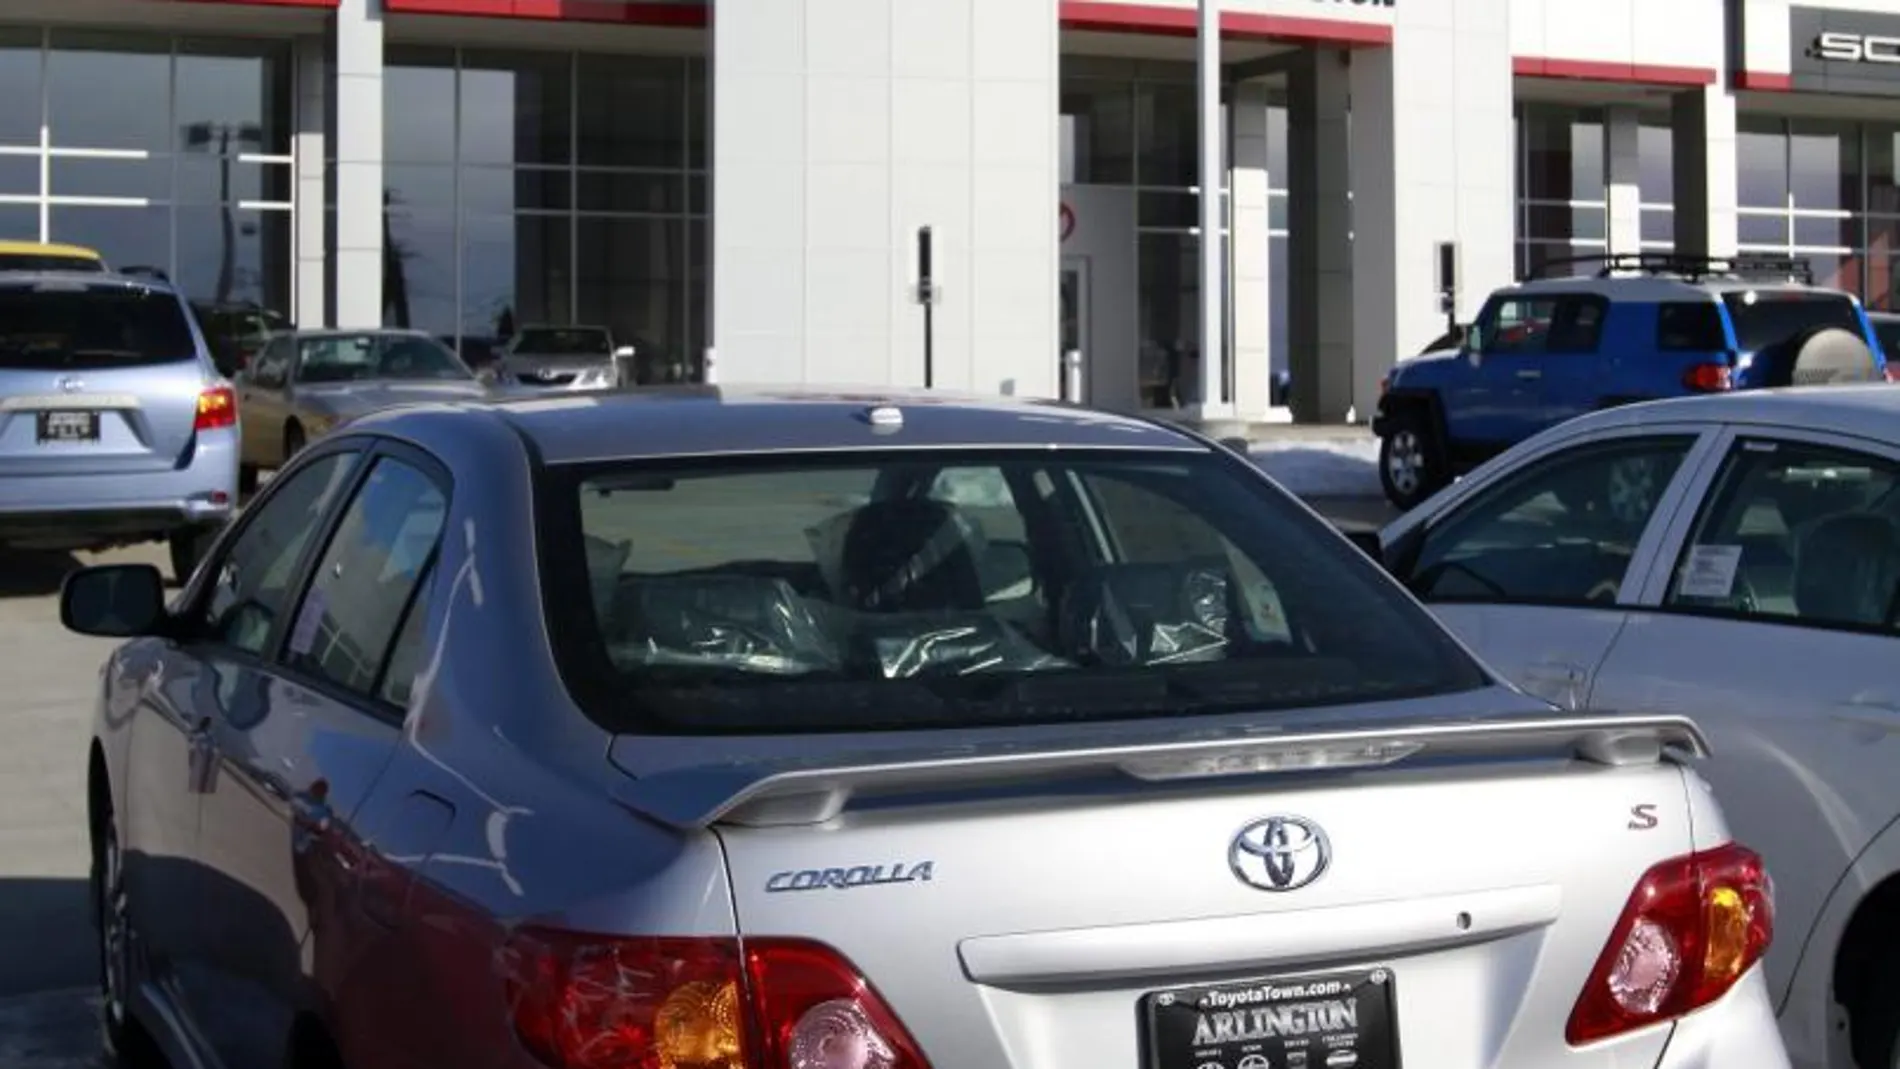 Toyota Corolla en uno de los concesionarios de la marca japonesa en América